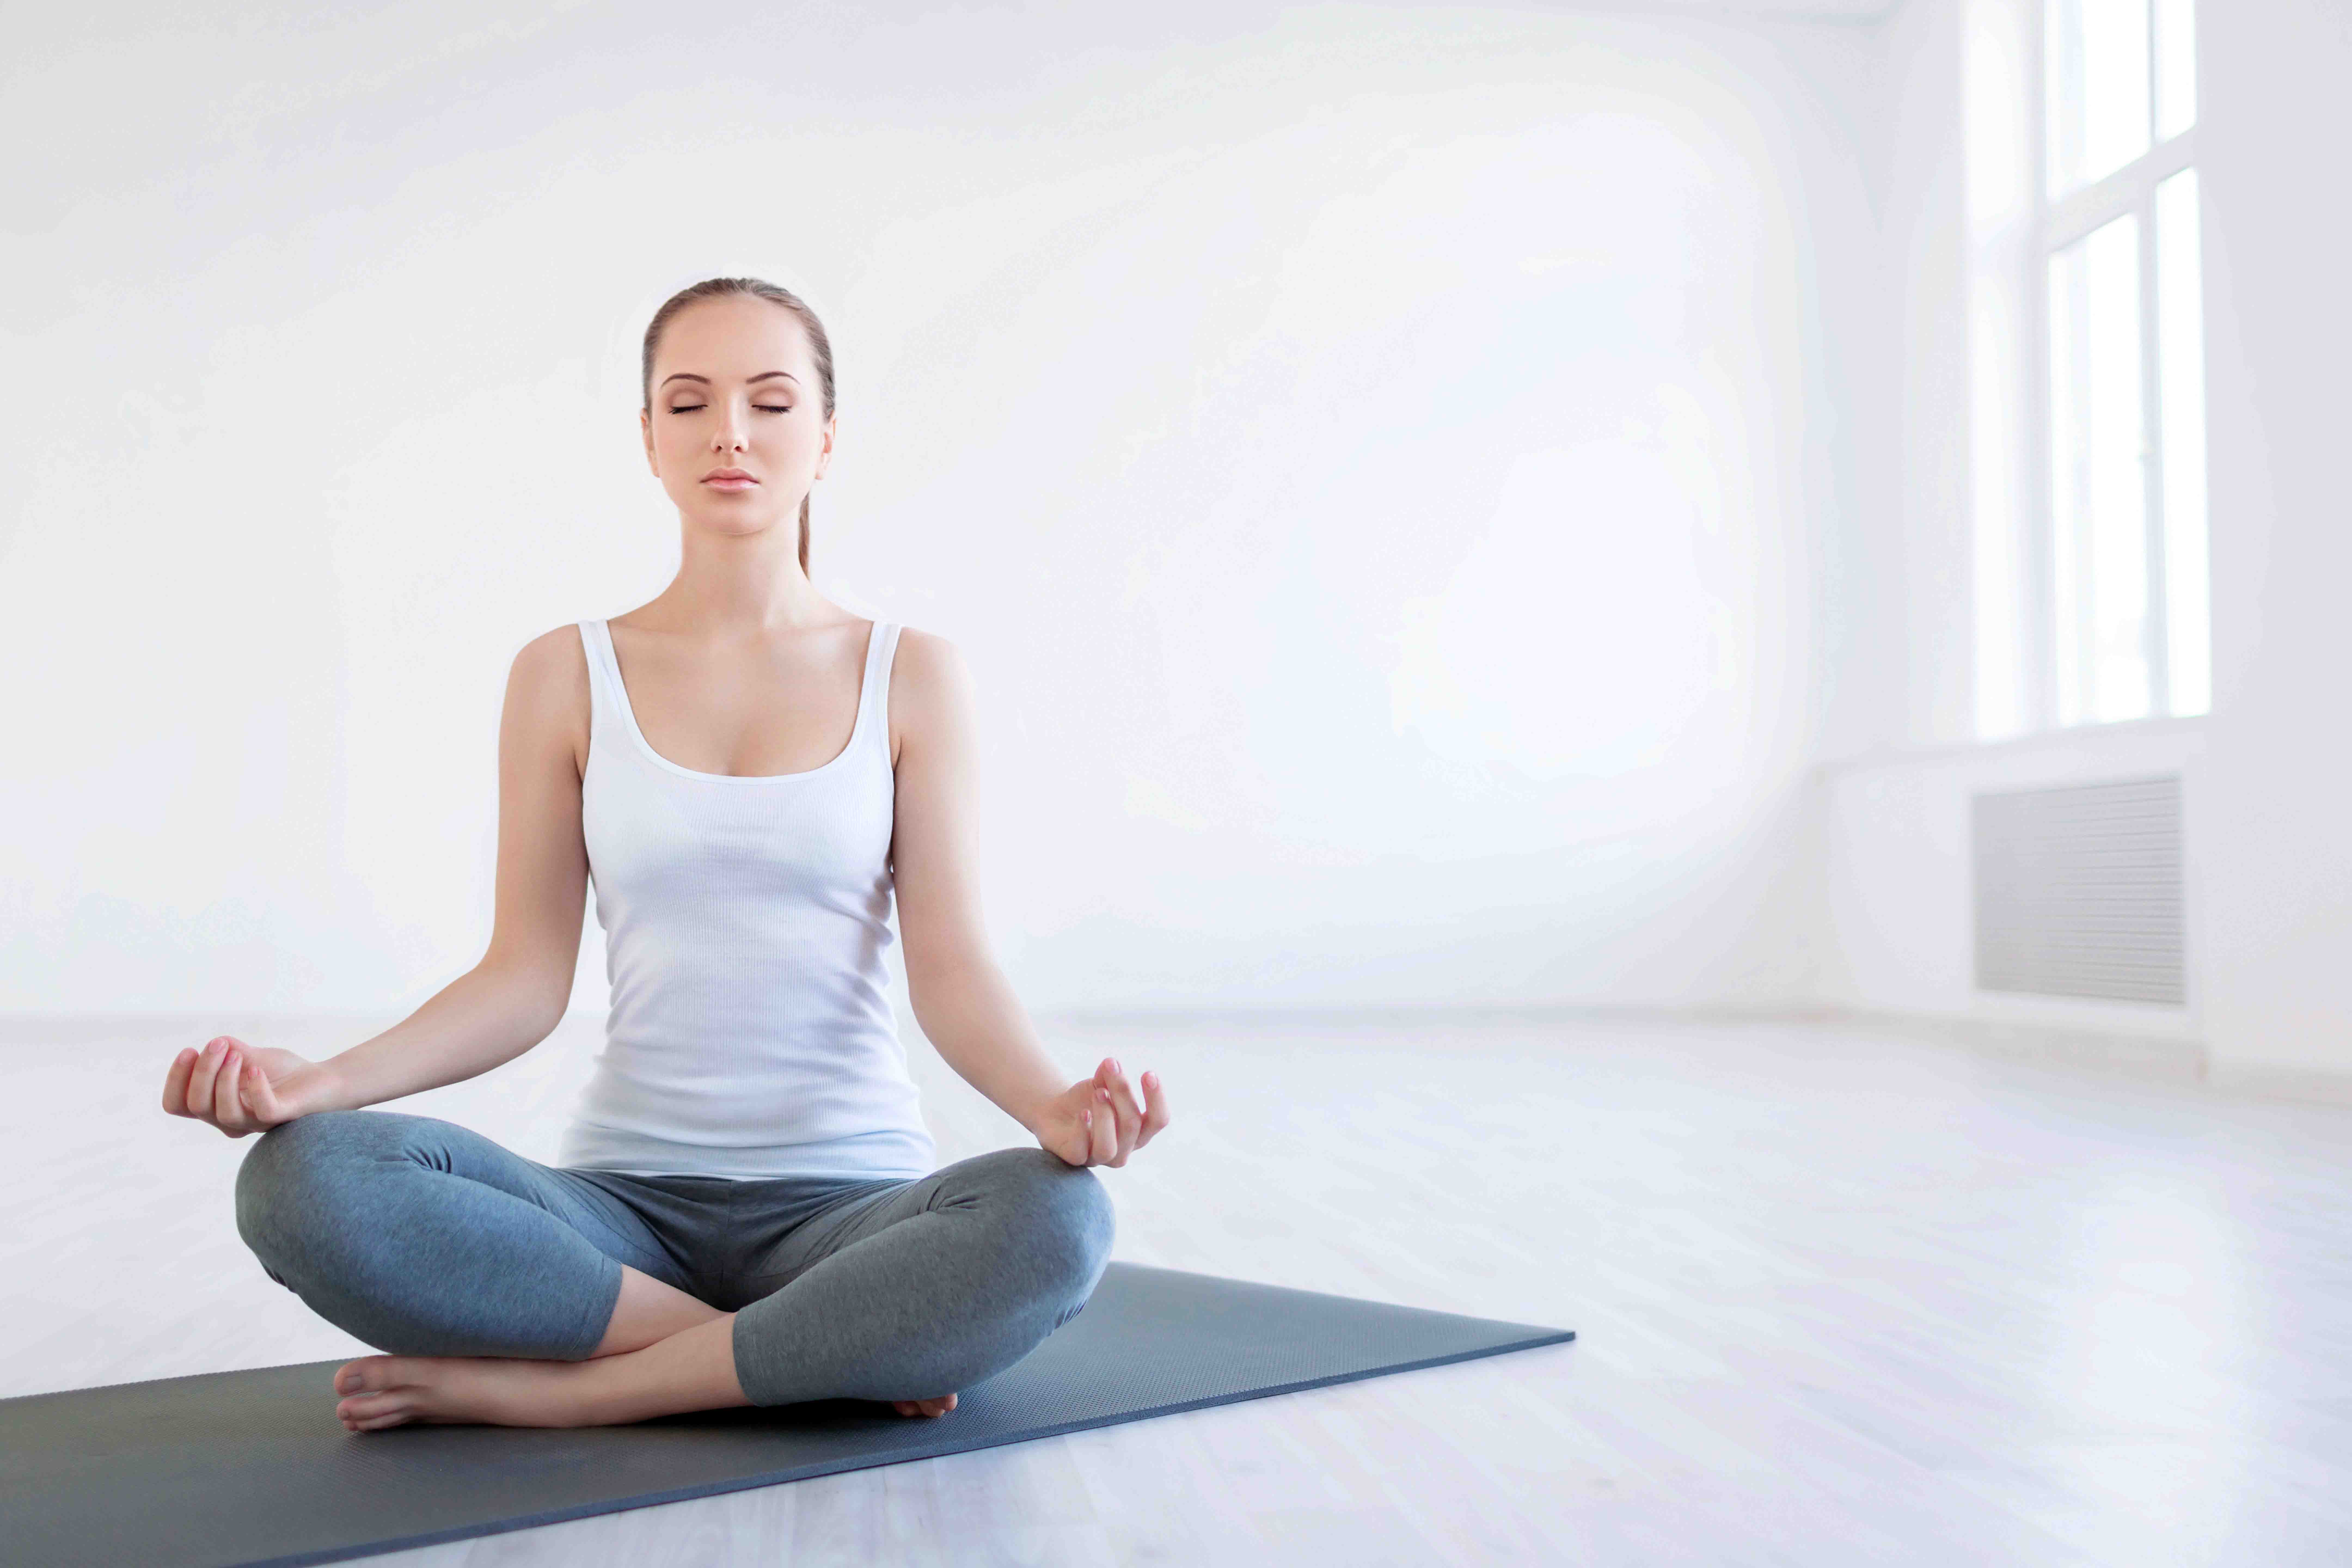 Your meditation. Студия медитации. Девушка йога. Йога для женщин. Девушка медитирует.